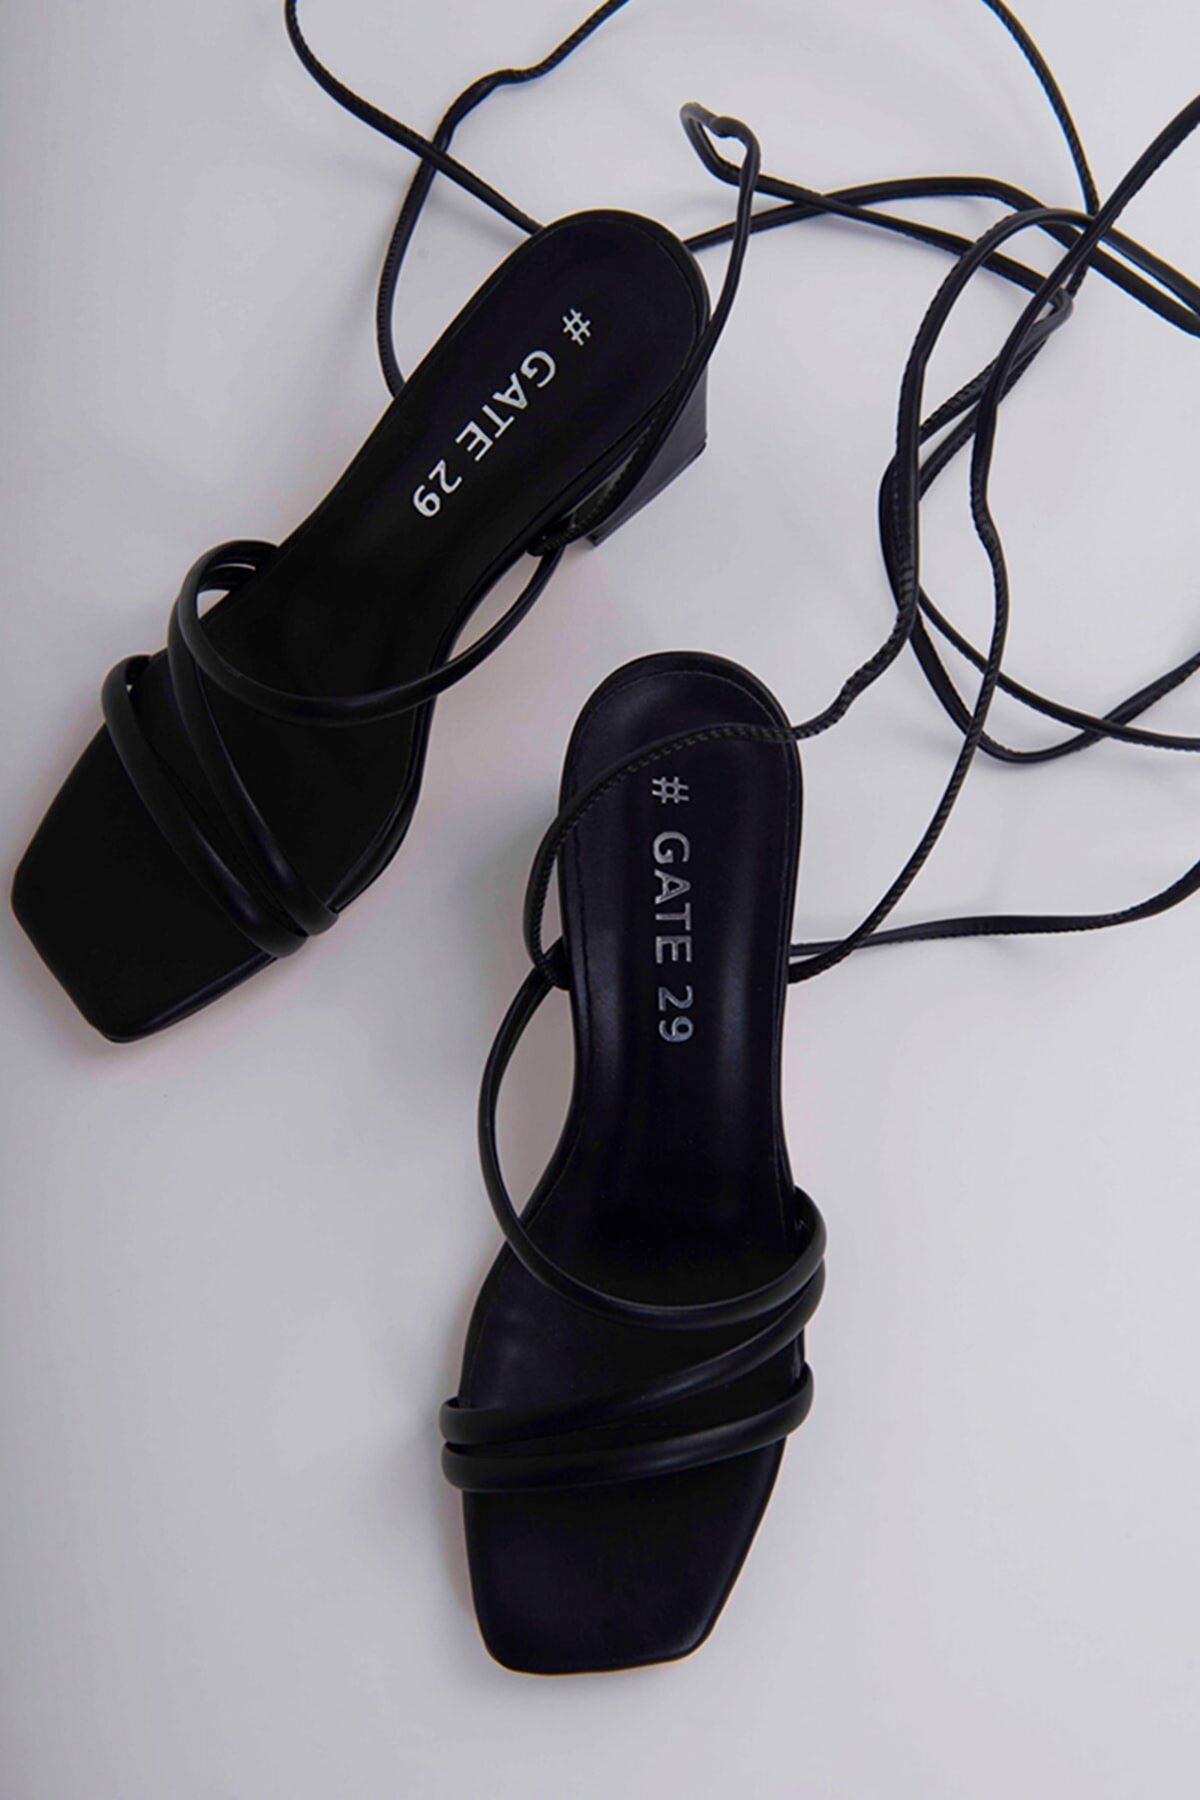 Kadın Bantlı Ve İpli Topuklu Ayakkabı Sandalet Angola Gate Shoes-Siyah